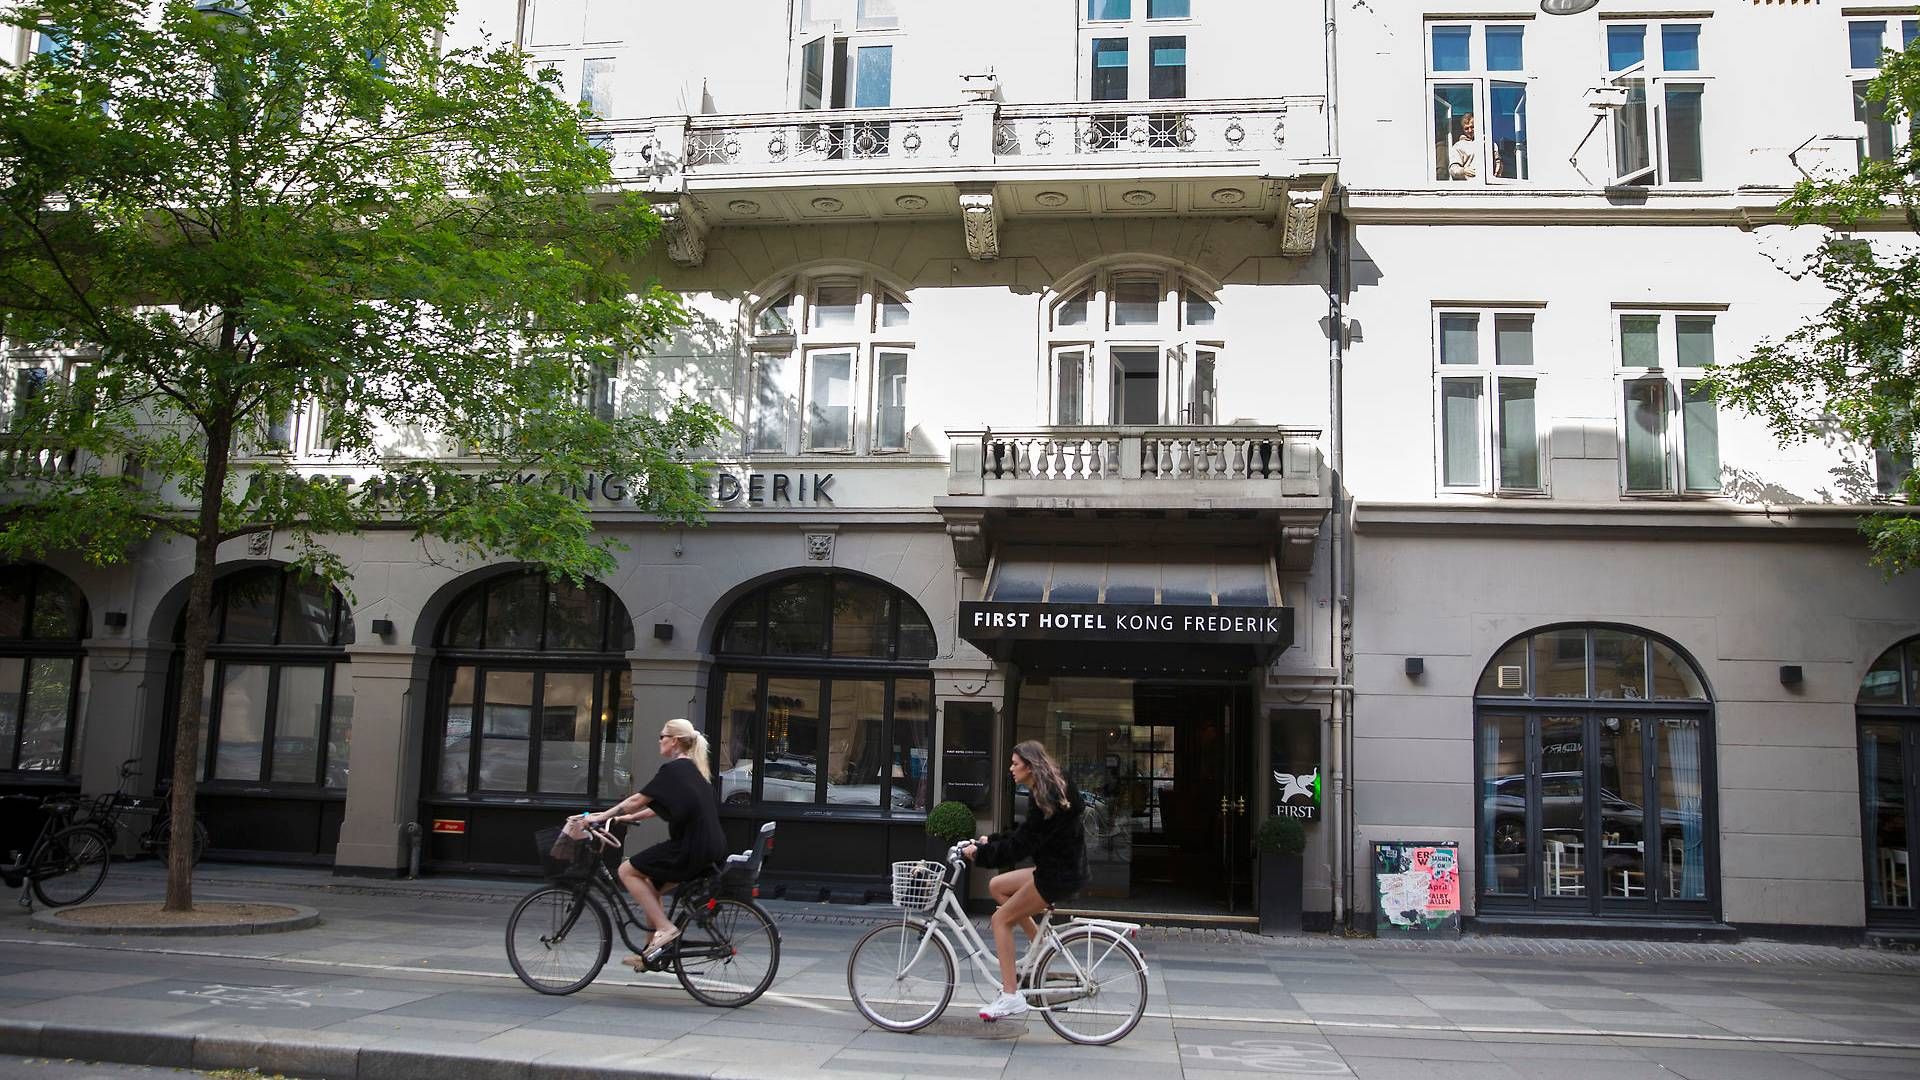 Hotel Kong Frederik på Vester Voldgade tæt på Rådhuspladsen i København lover majestætelig luksus på sine værelser. | Foto: Thomas Borberg / Ritzau Scanpix